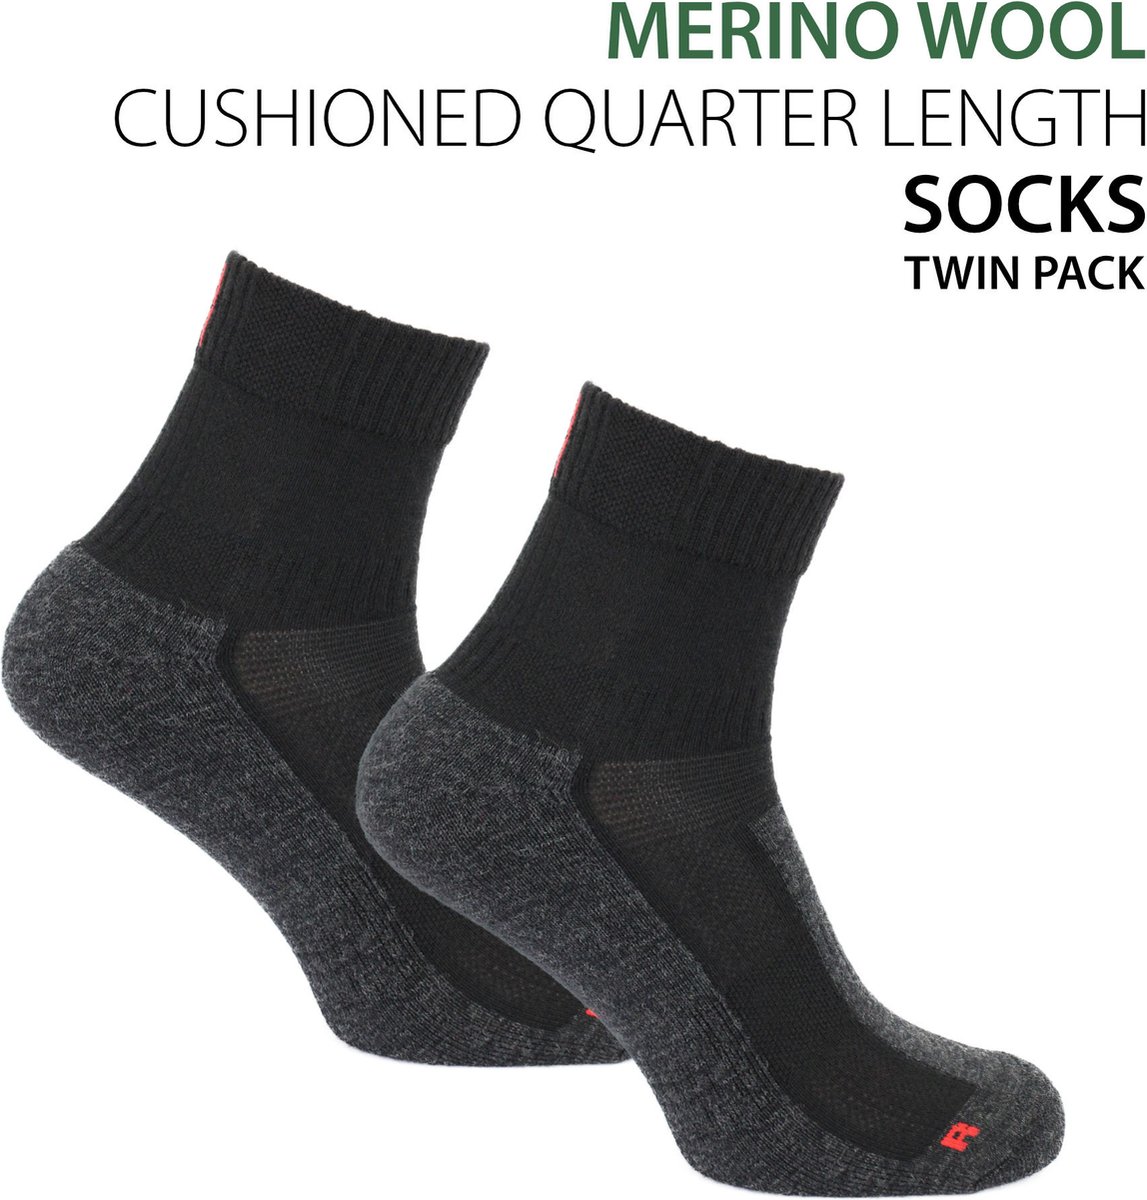 Norfolk - Fietssokken - Wandelsokken - 2 paar - 63% Merino wollen sokken met demping - Enkel Sokken - LeonardoQTR - Zwart - 35-38